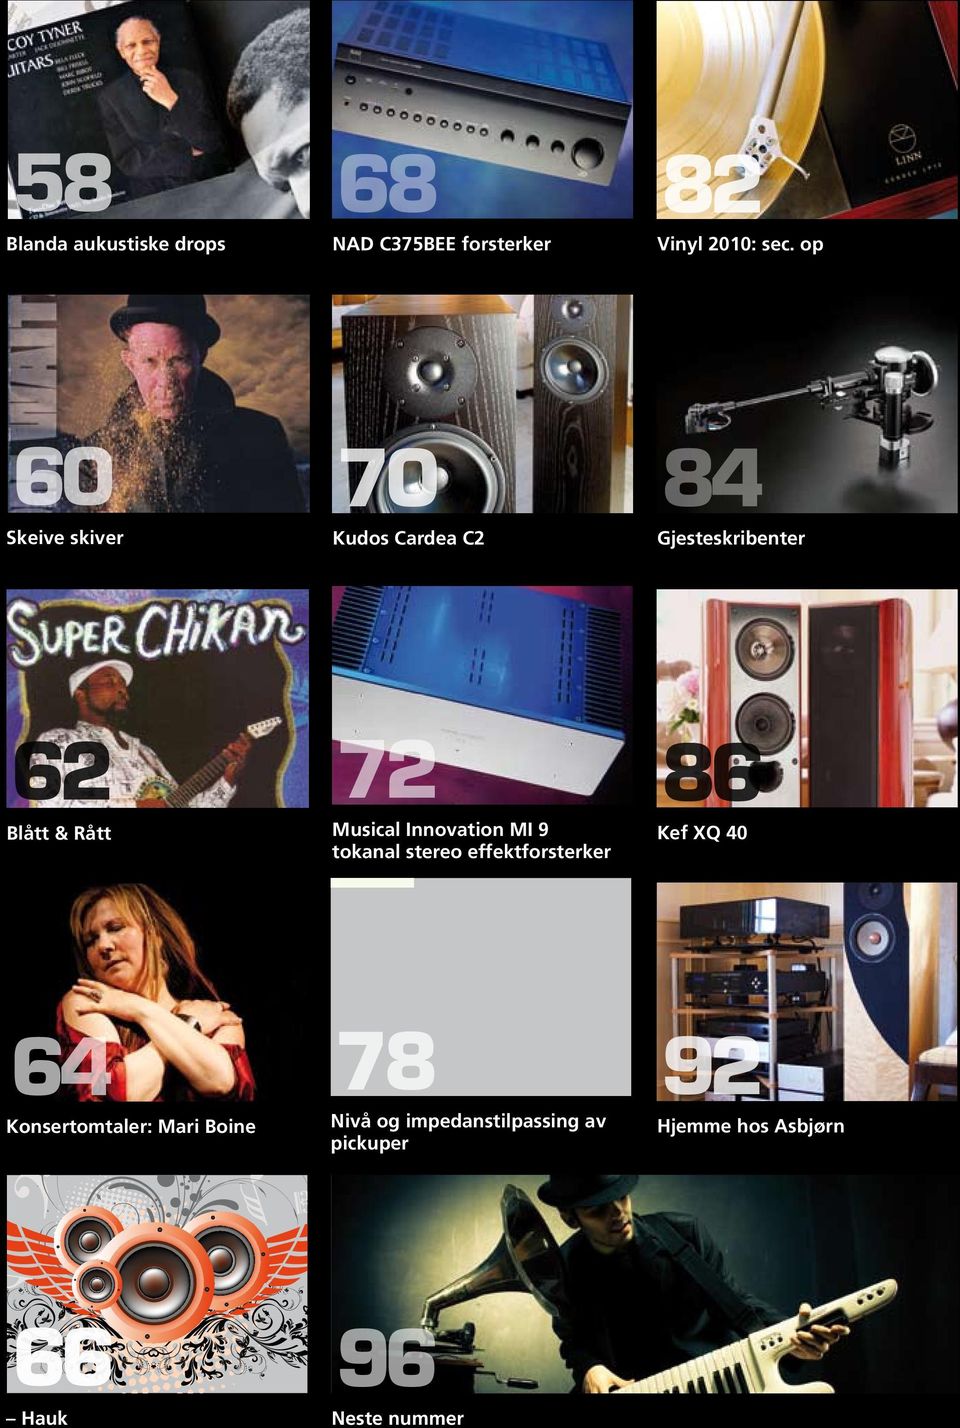 Musical Innovation MI 9 tokanal stereo effektforsterker 86 Kef XQ 40 64